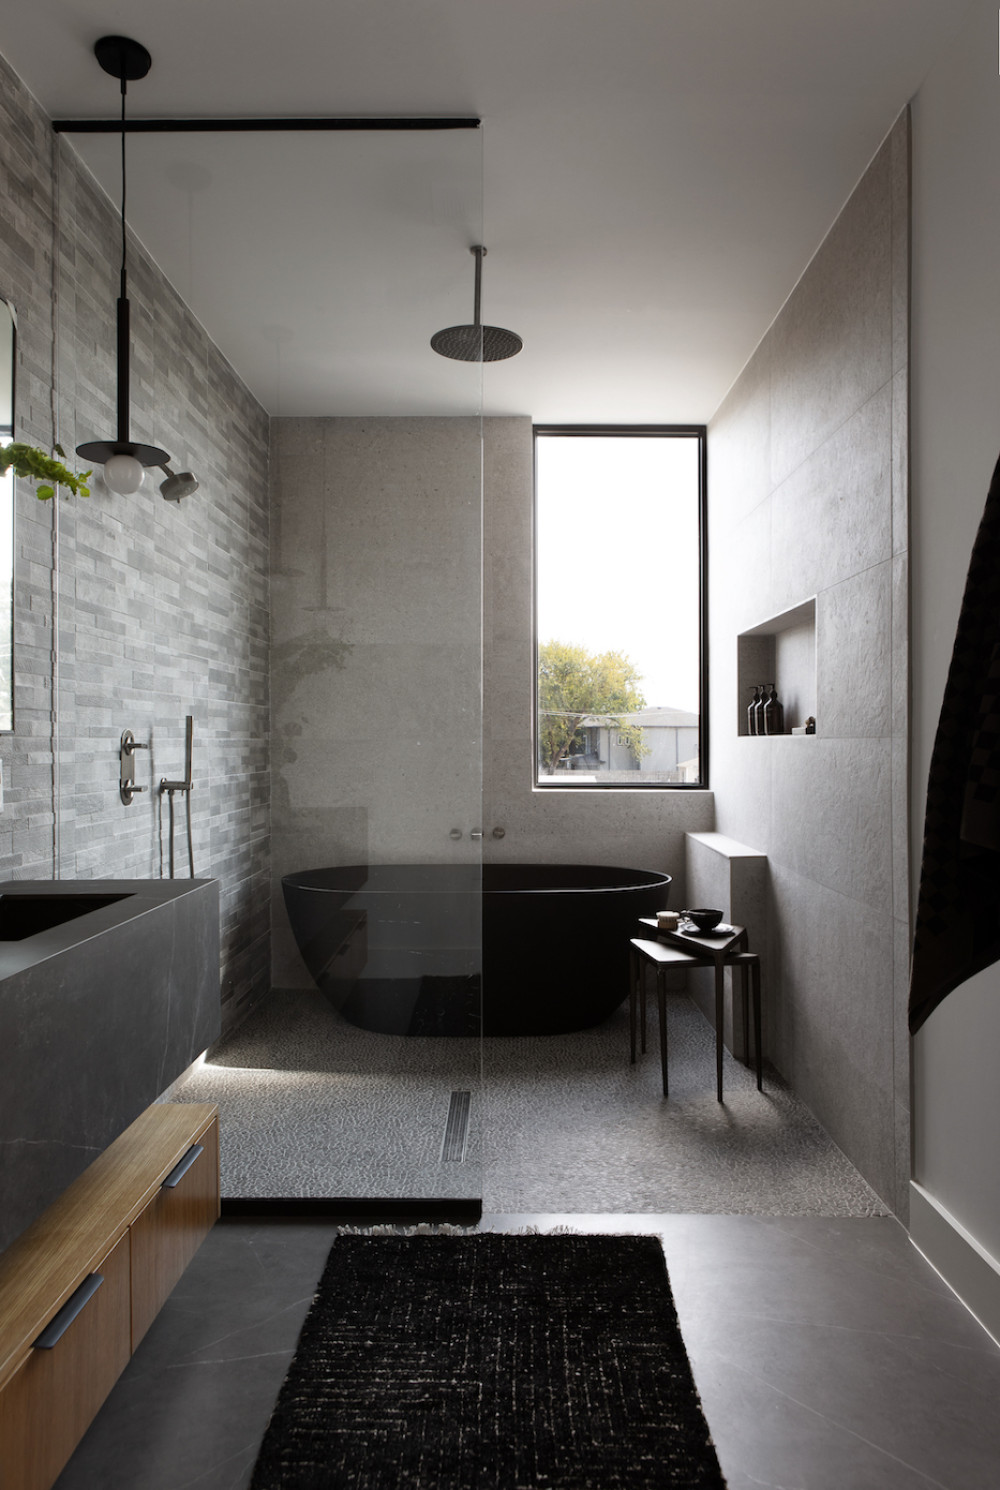 beyond-interior-design-black-bathroom-window-wooden-furniture